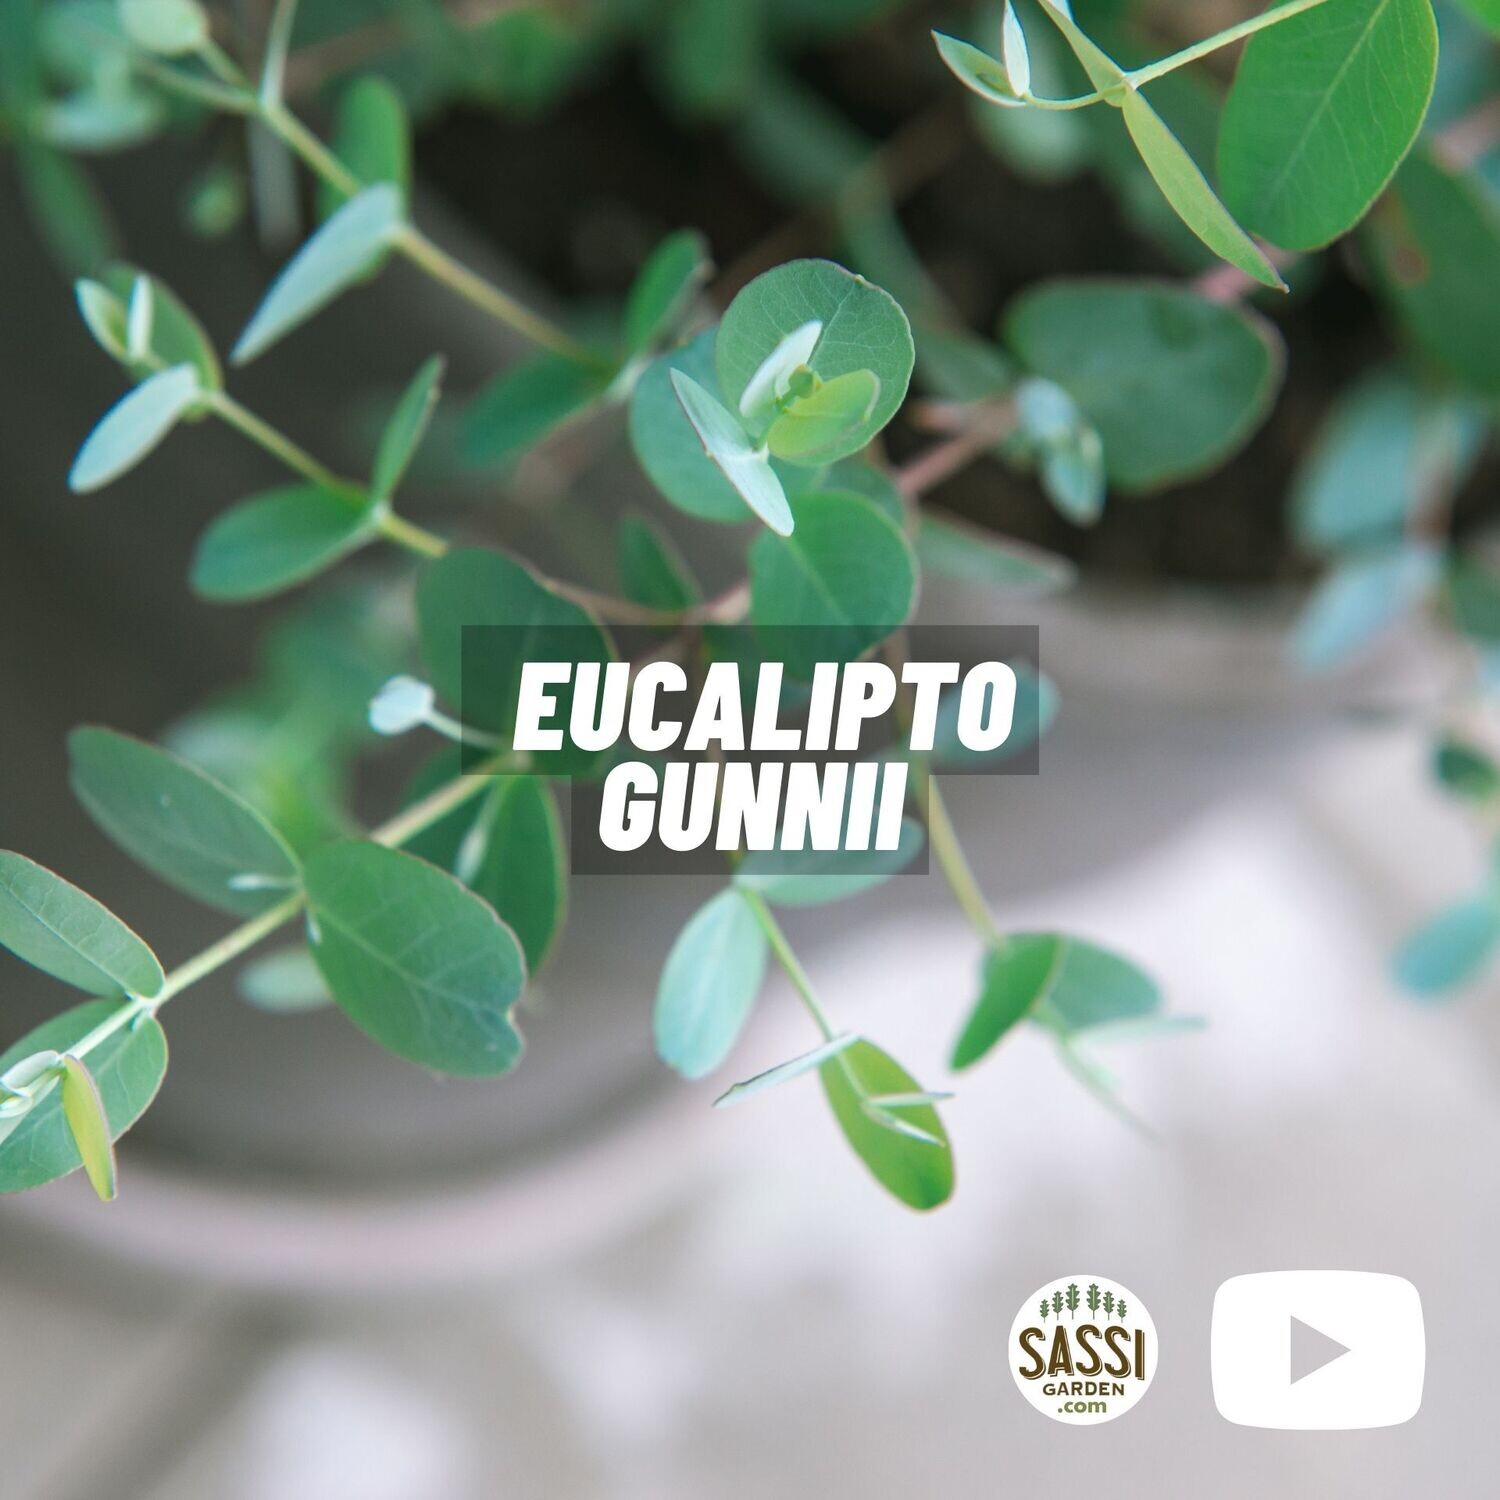 EUCALYPTO GUNNII / EUCALIPTO DEL SIDRO - Eucalyptus gunnii baby blue - vaso Ø 13 cm